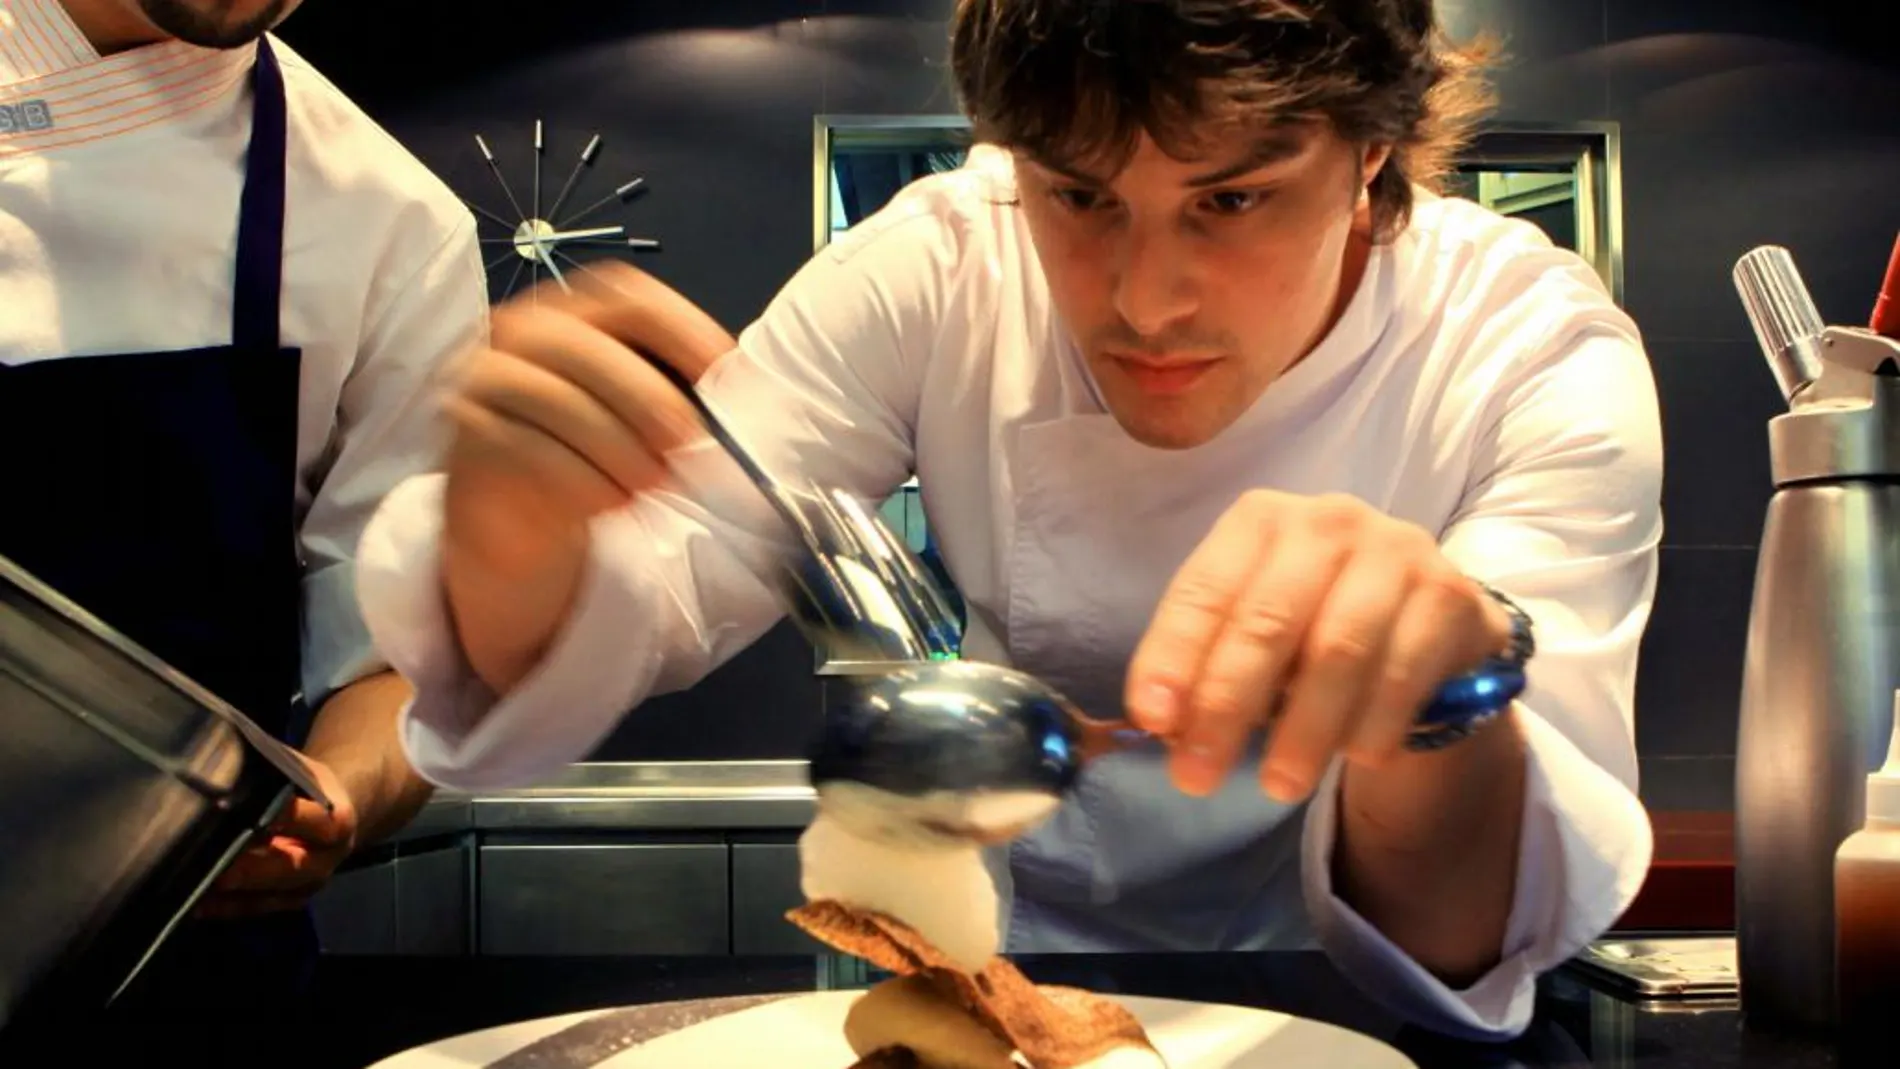 Jordi Cruz, chef del restaurante ABaC (Barcelona), uno de los once con 3 estrellas Michelin en España.